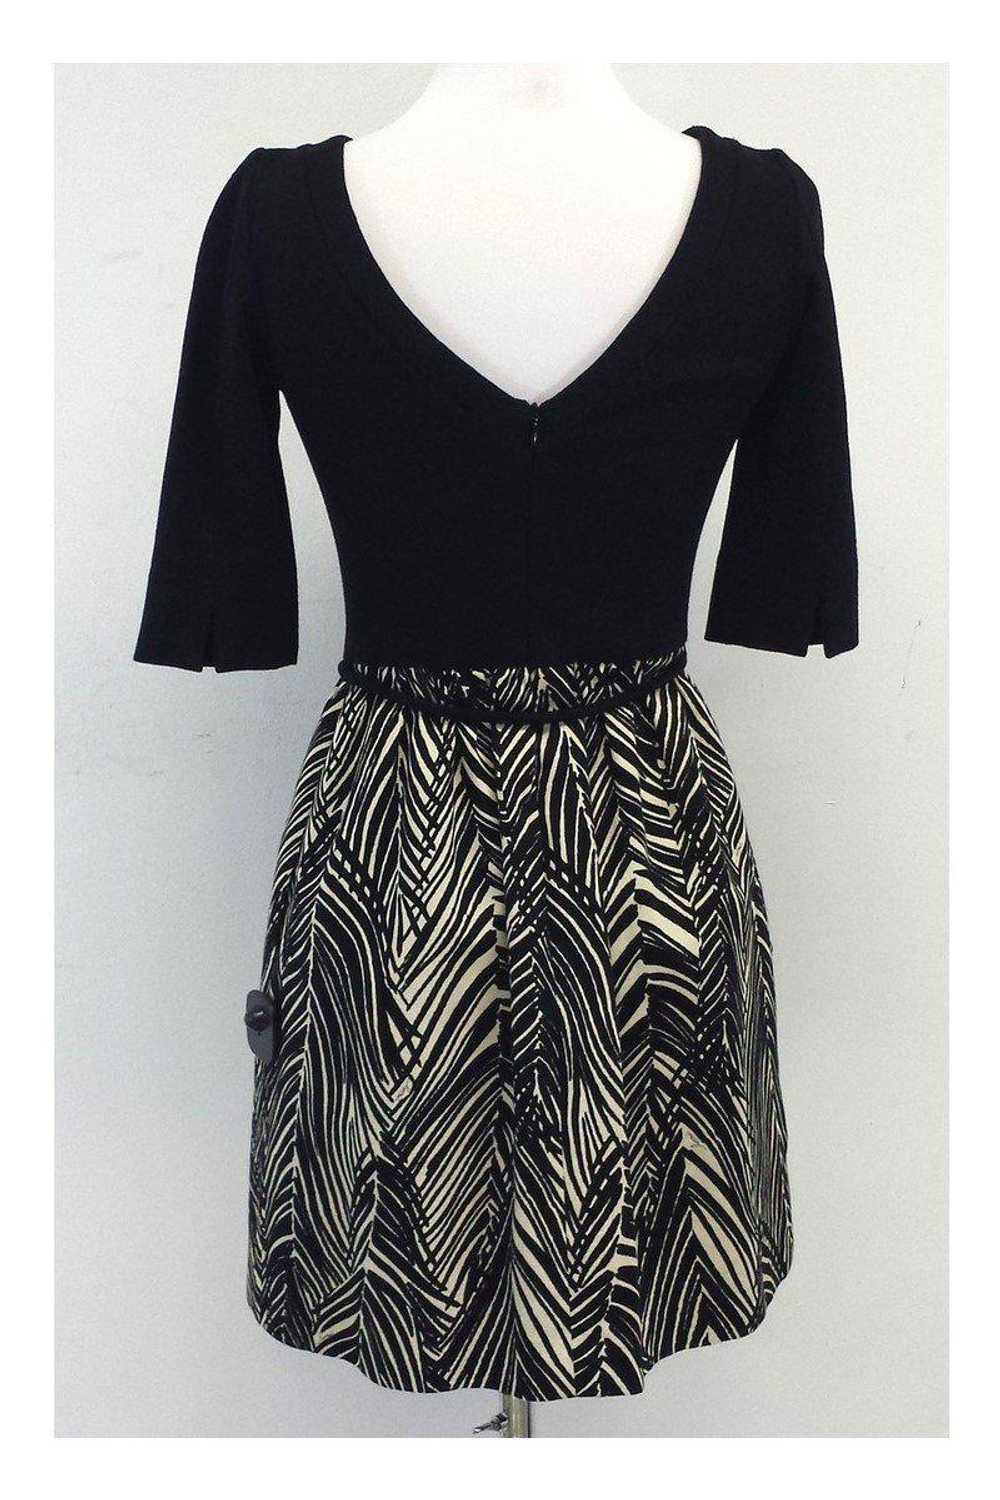 Milly - Black & Tan Print Cotton Dress Sz 2 - image 3